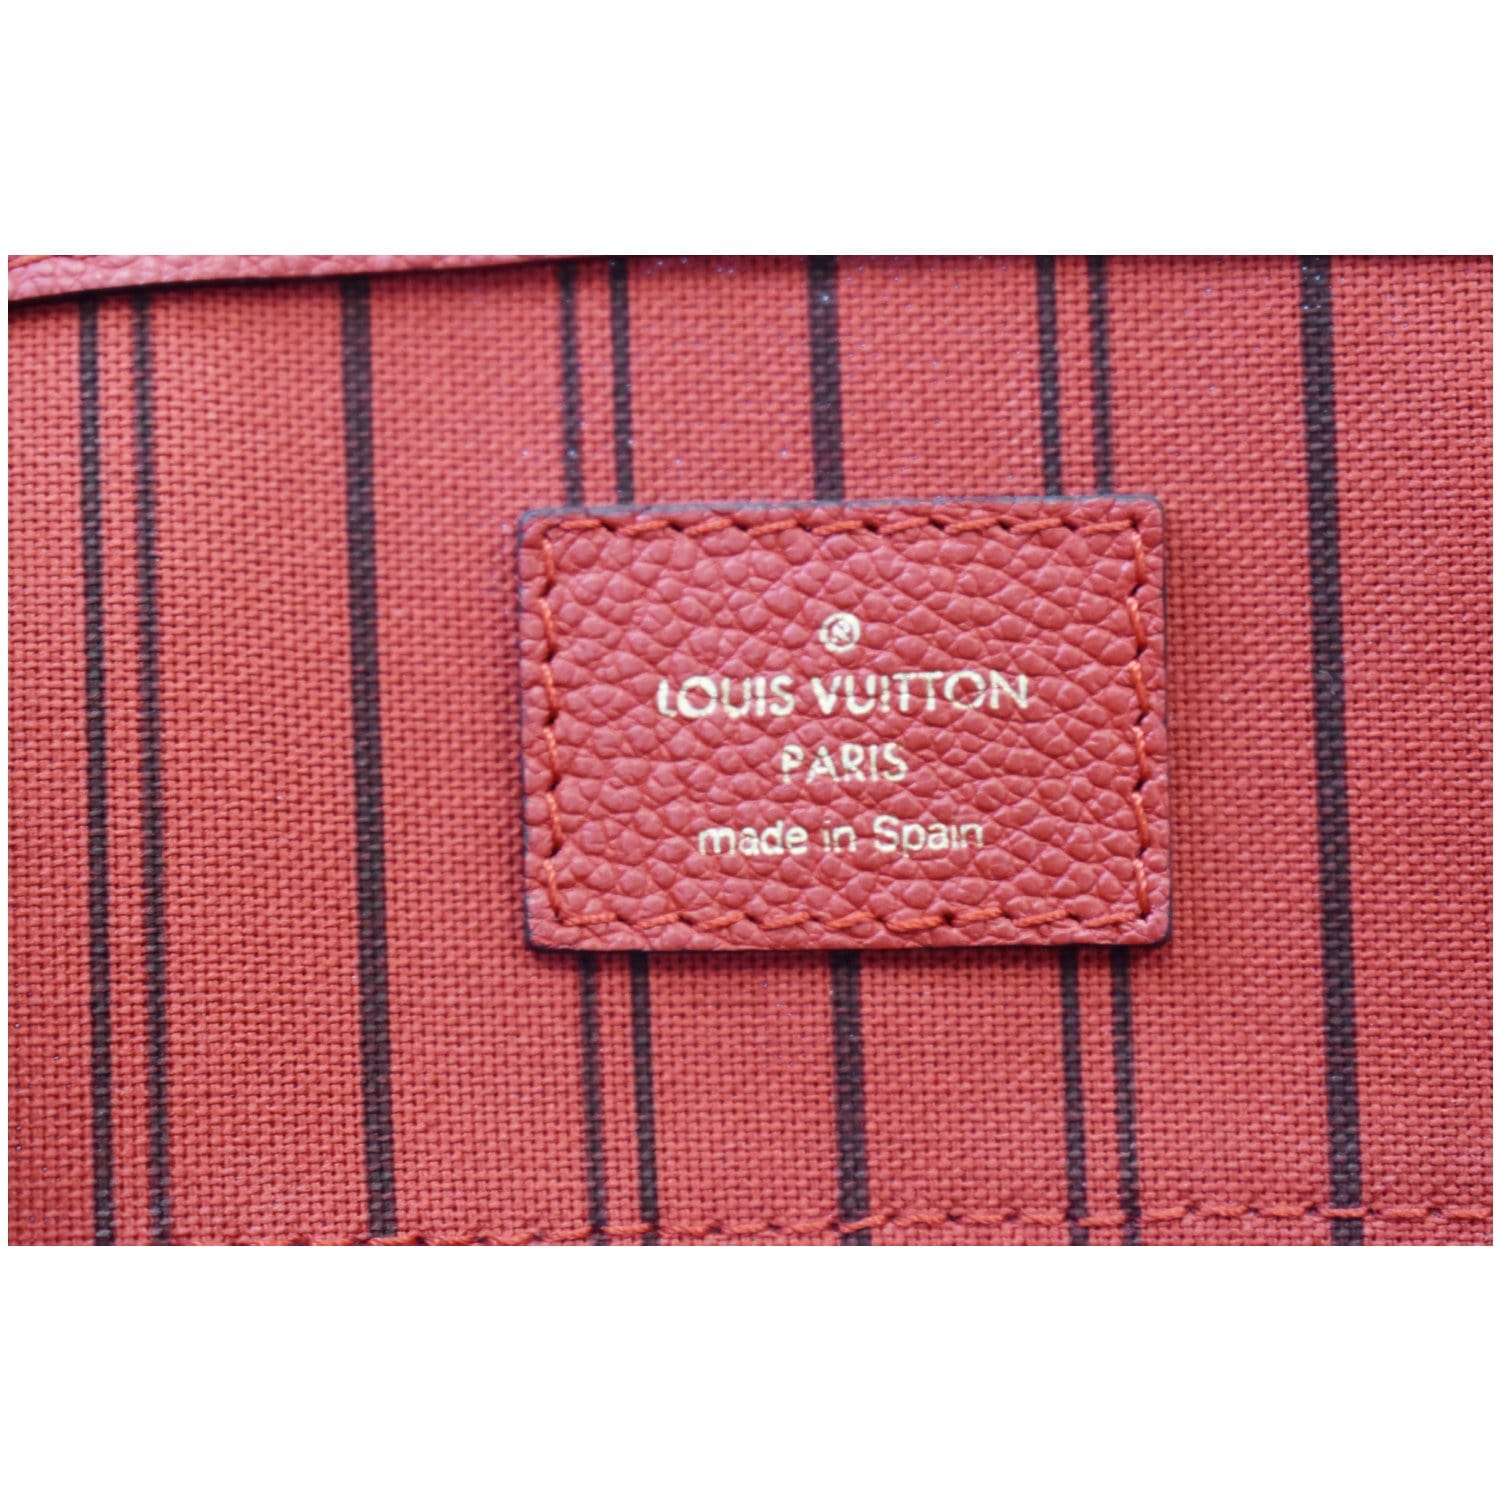 Louis Vuitton - Iris Monogram Empreinte Pont-Neuf mm